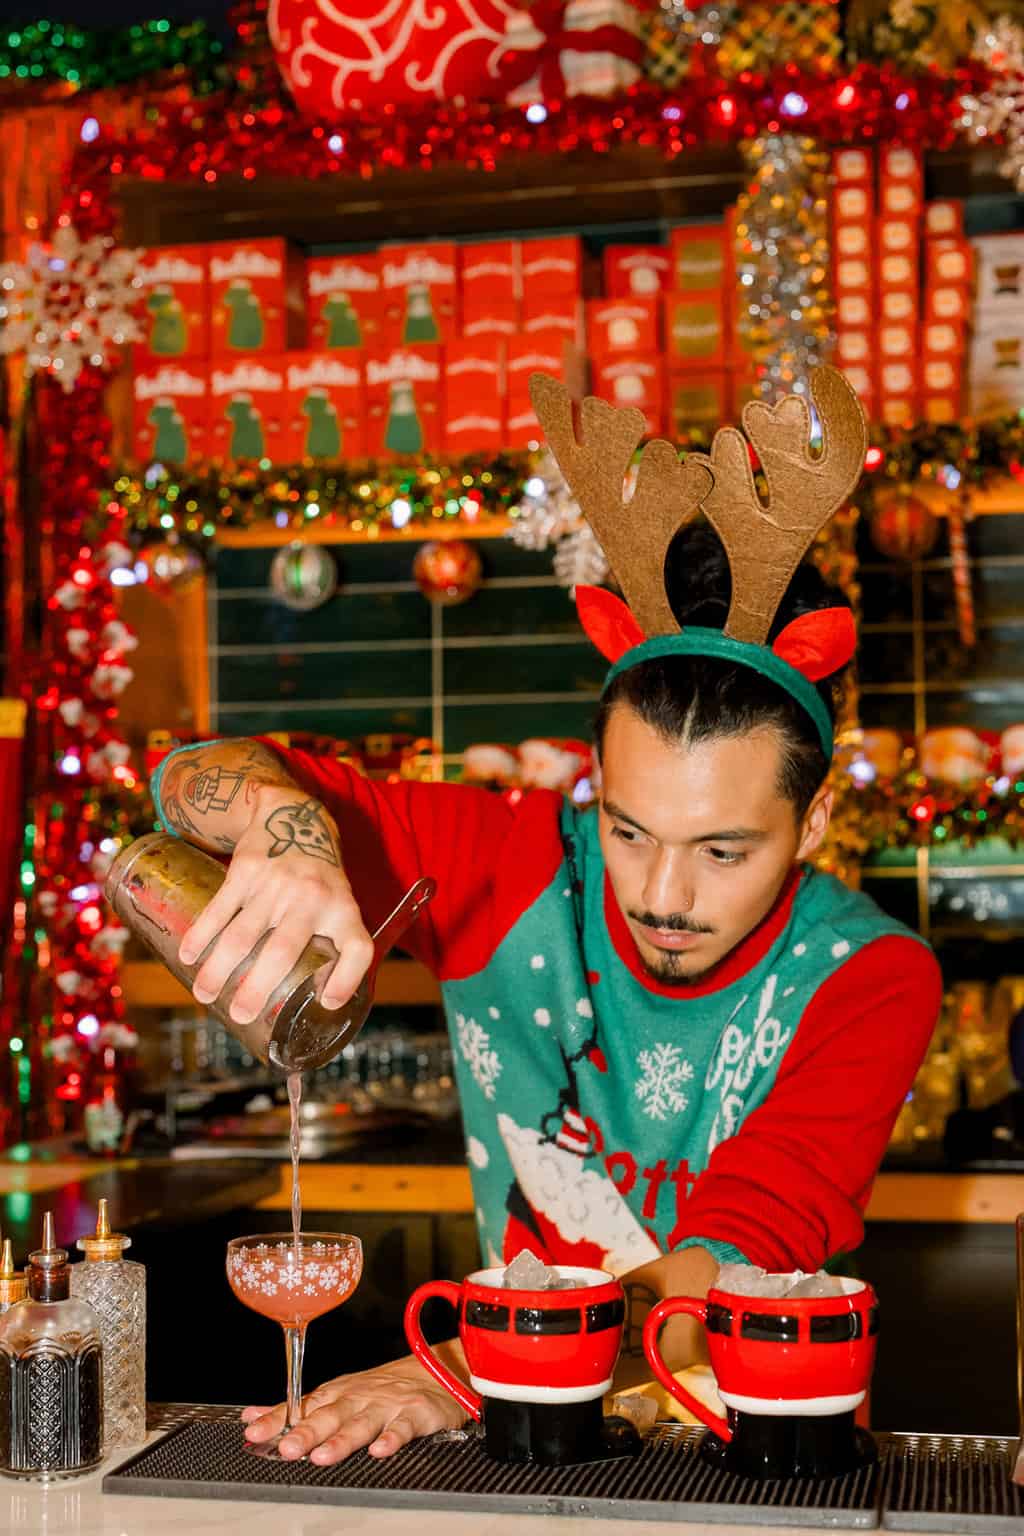 Bartender making drinks at Miracle Bar in Santa Barbara at Christmas